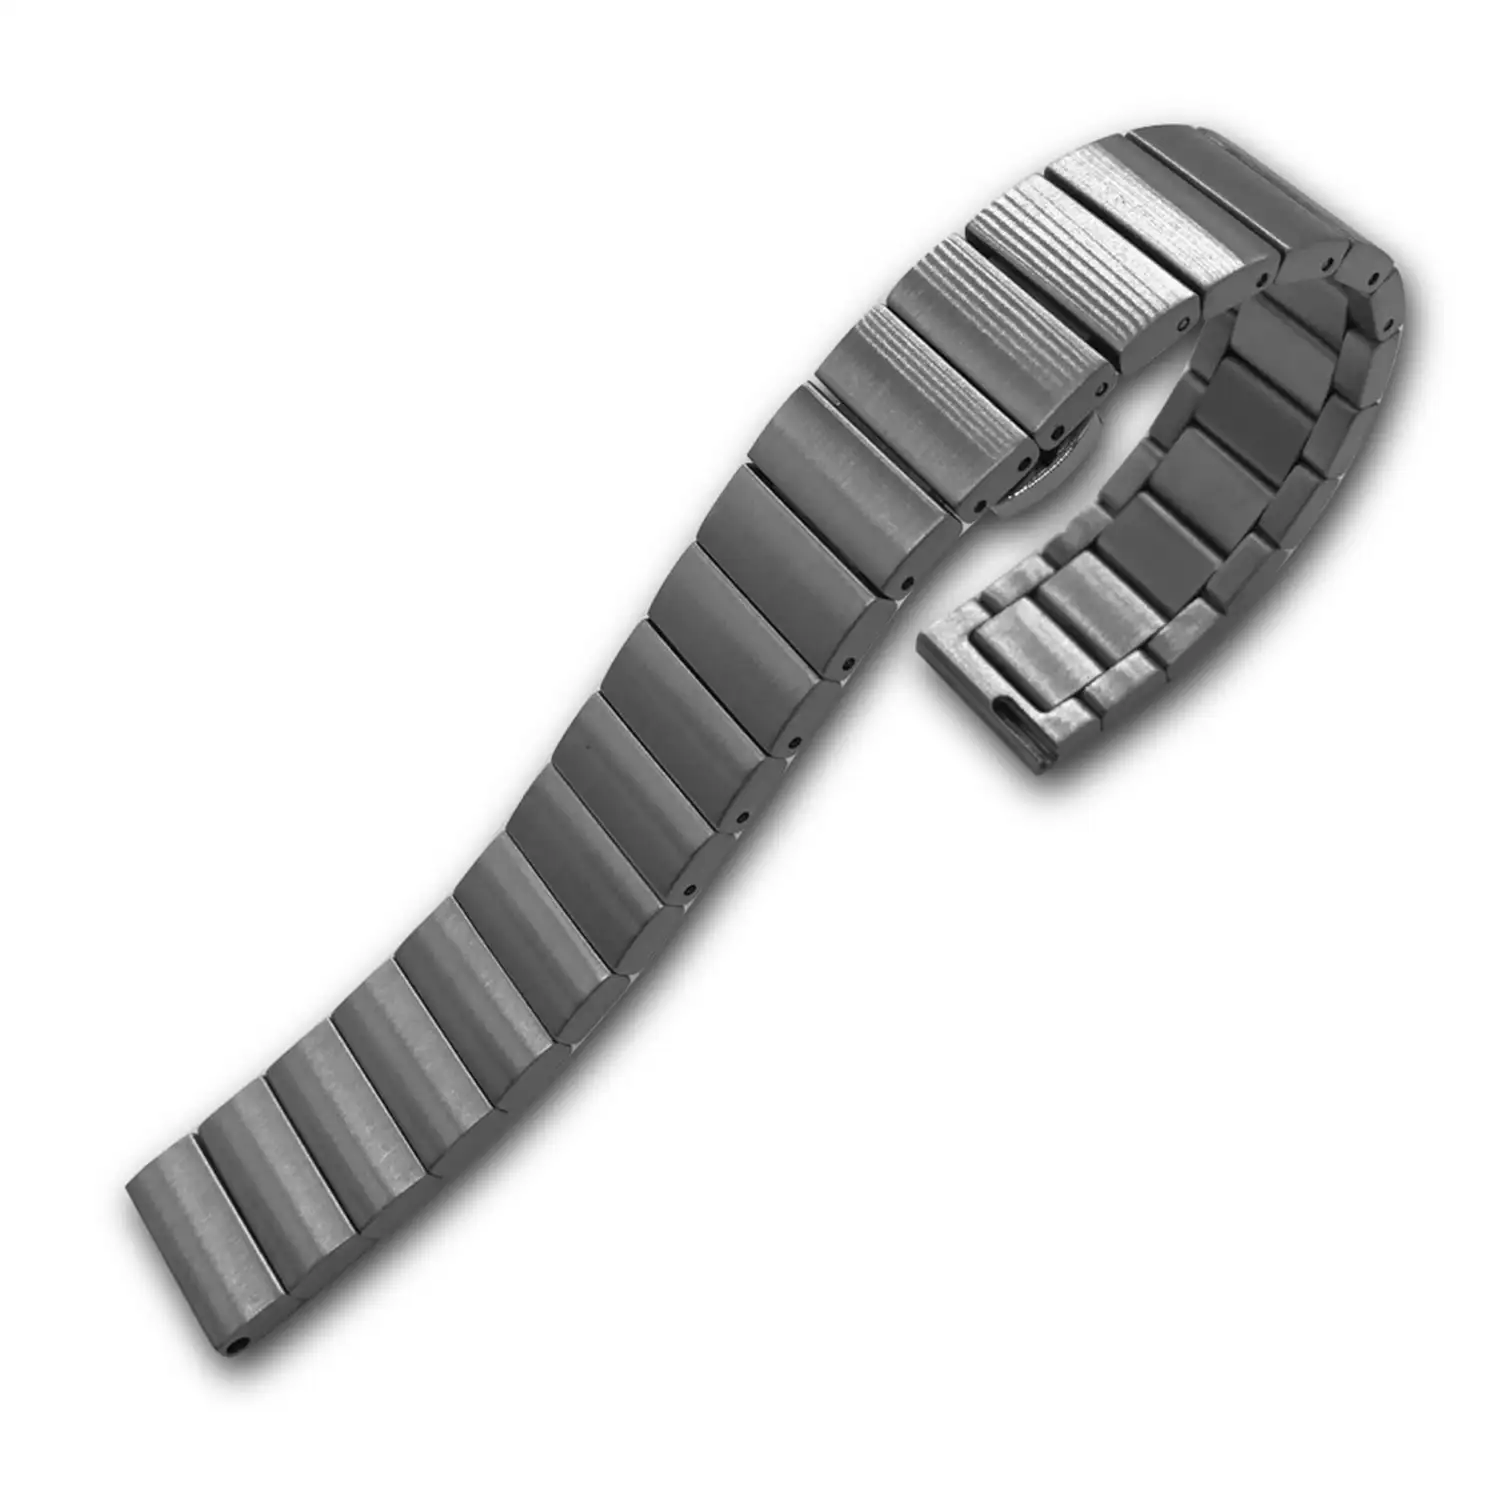 Correa universal de acero inoxidable para relojes de 20mm. Sistema Quick Release de fácil cambio.